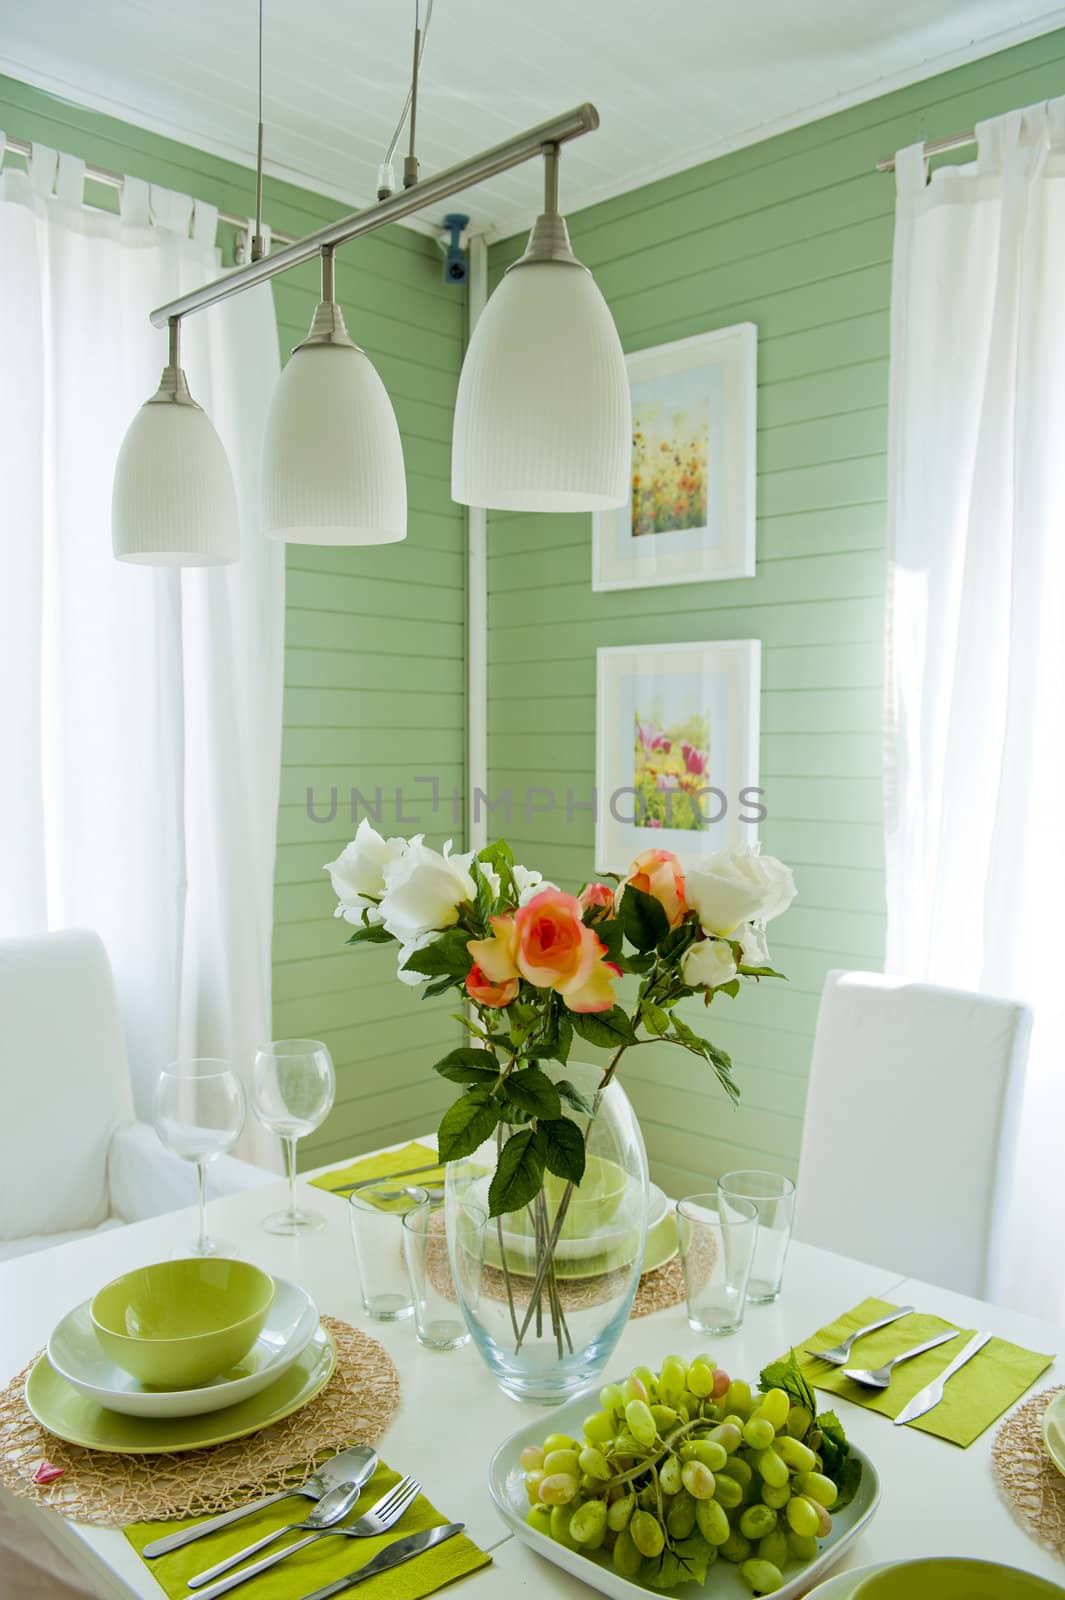 Traditional Scandinavian dining room interior